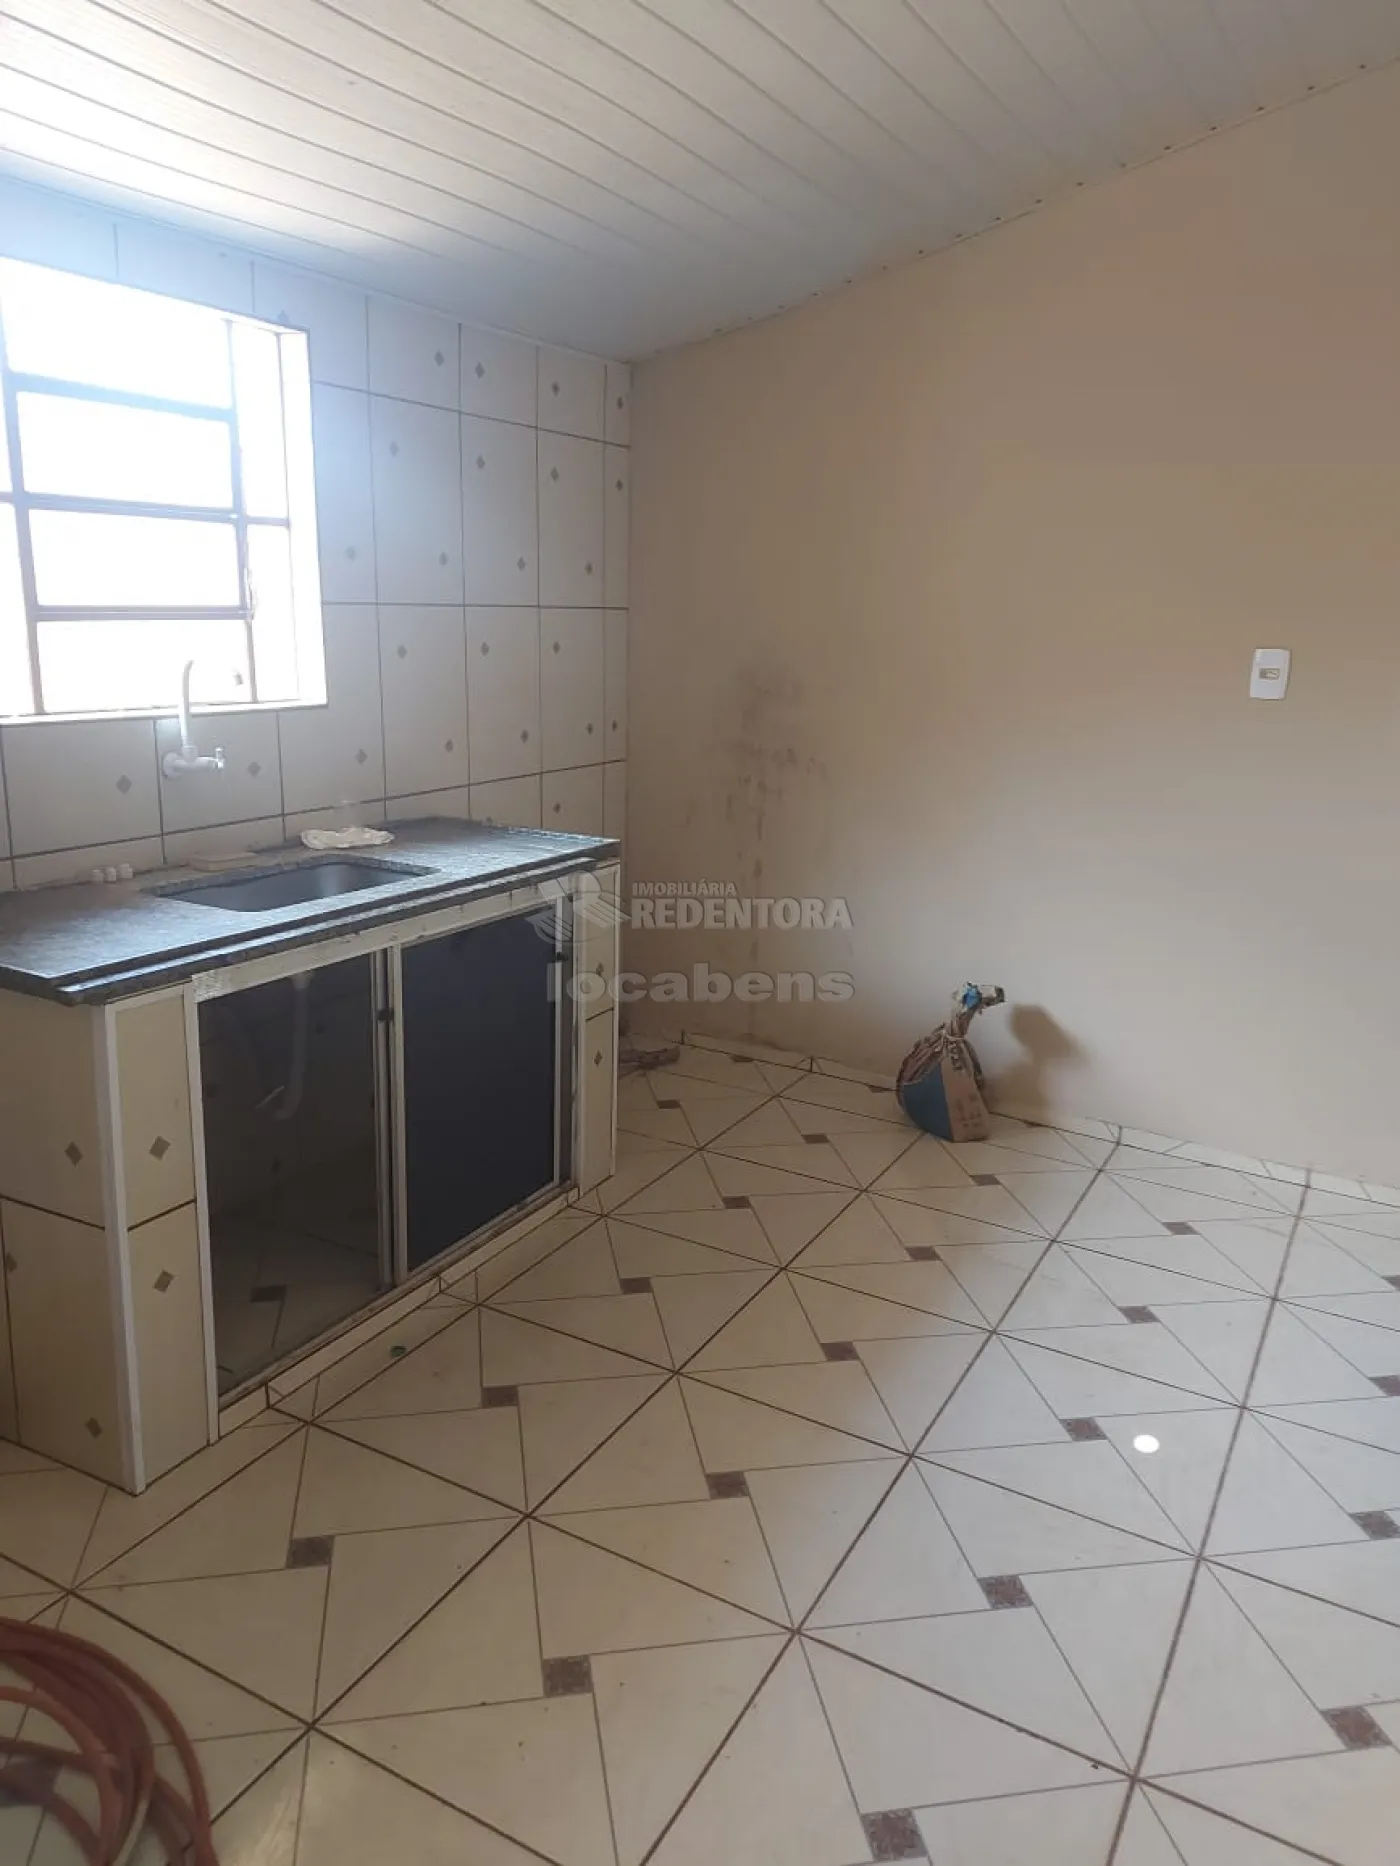 Alugar Casa / Padrão em Uchoa R$ 780,00 - Foto 8